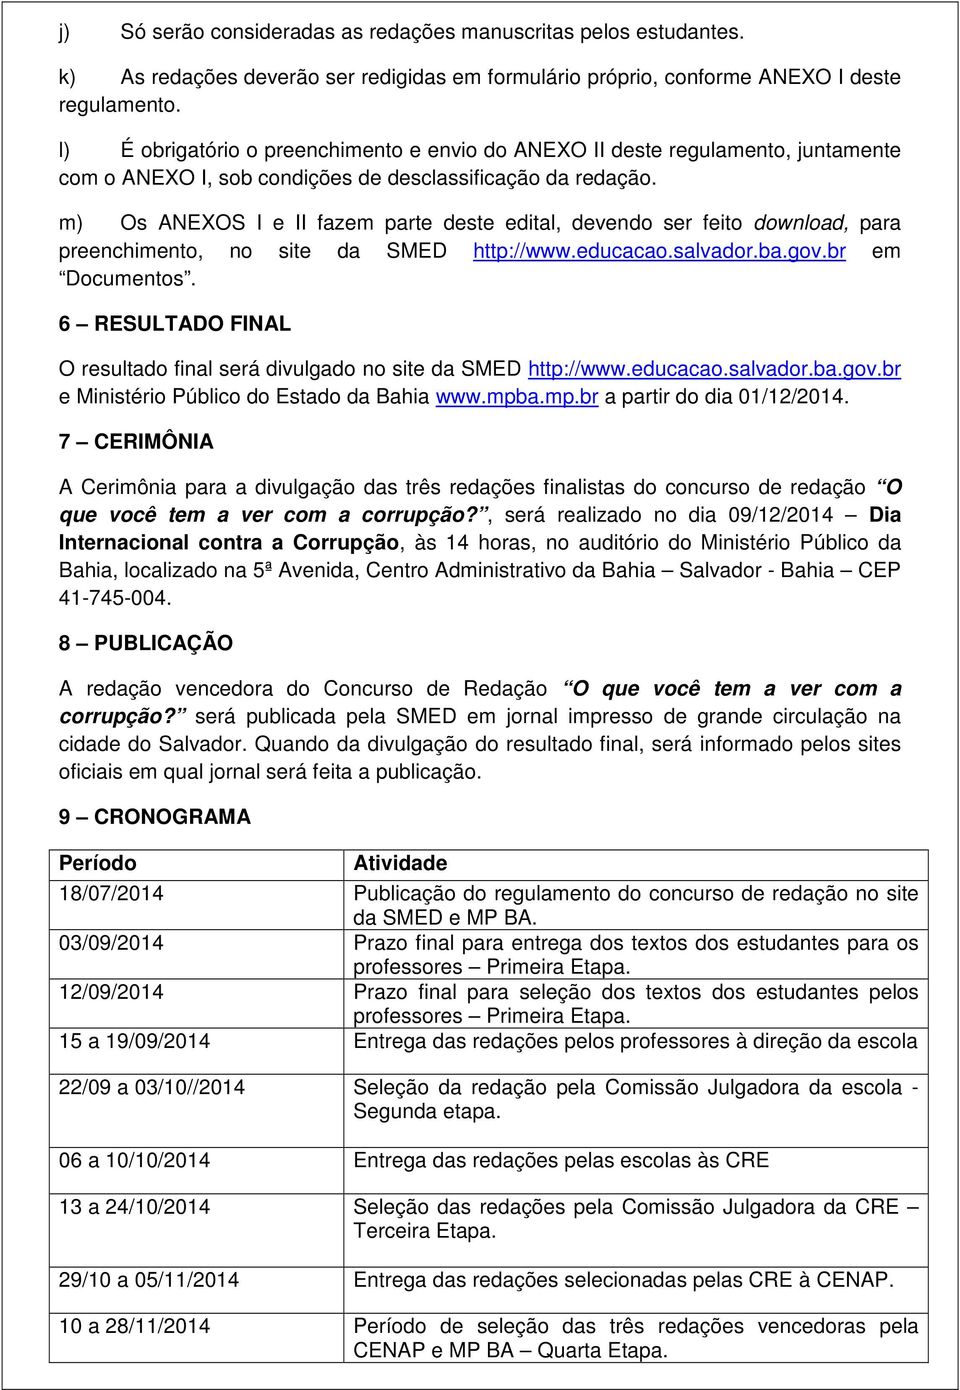 m) Os ANEXOS I e II fazem parte deste edital, devendo ser feito download, para preenchimento, no site da SMED http://www.educacao.salvador.ba.gov.br em Documentos.